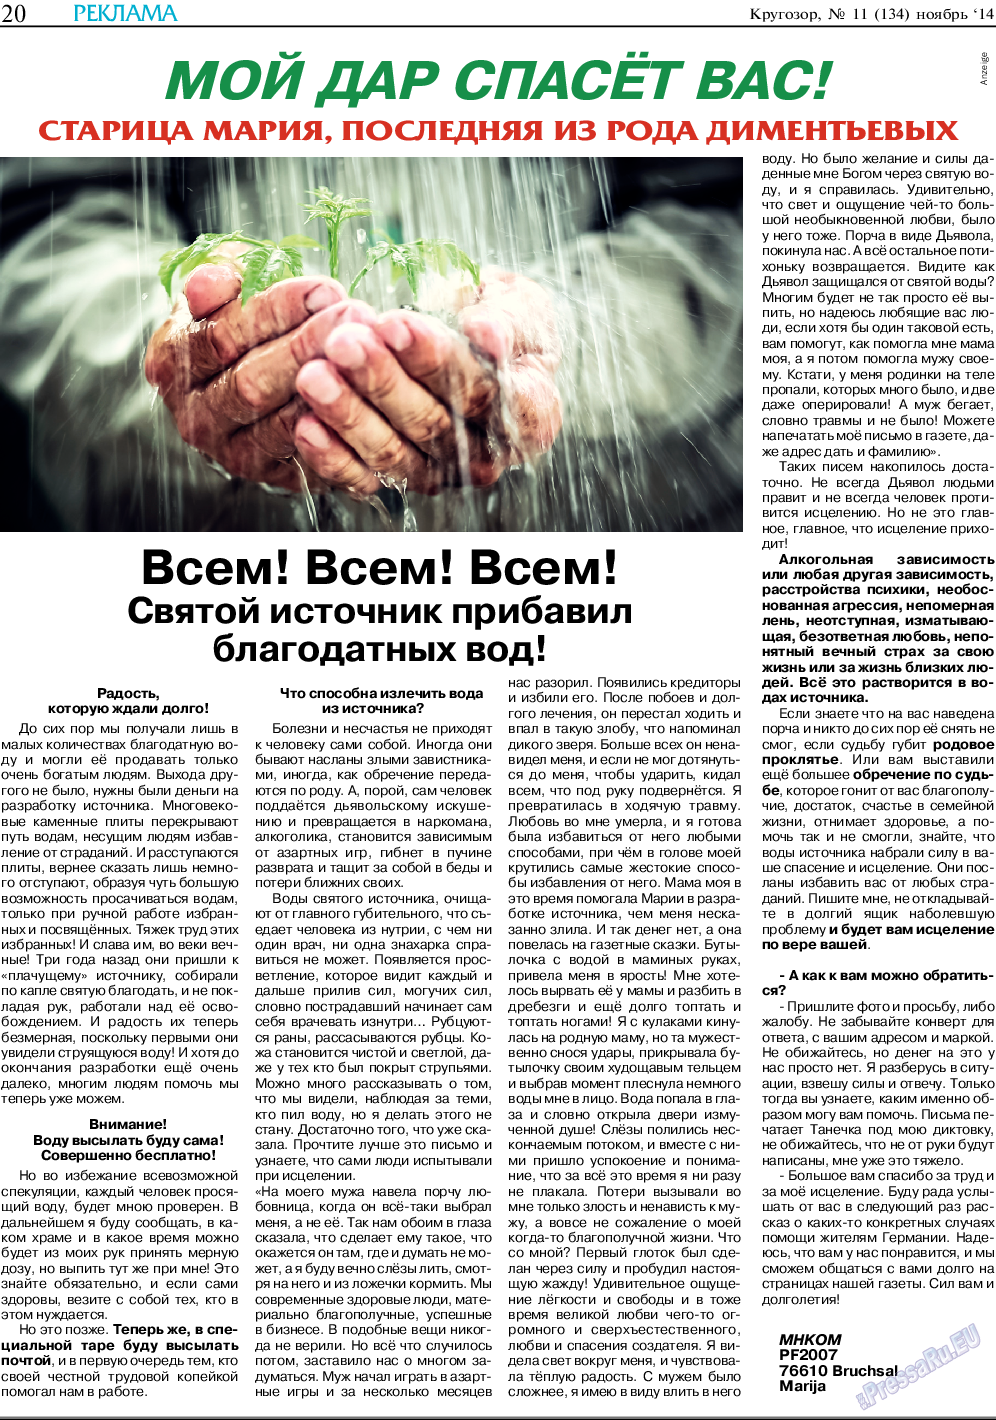 Кругозор, газета. 2014 №11 стр.20